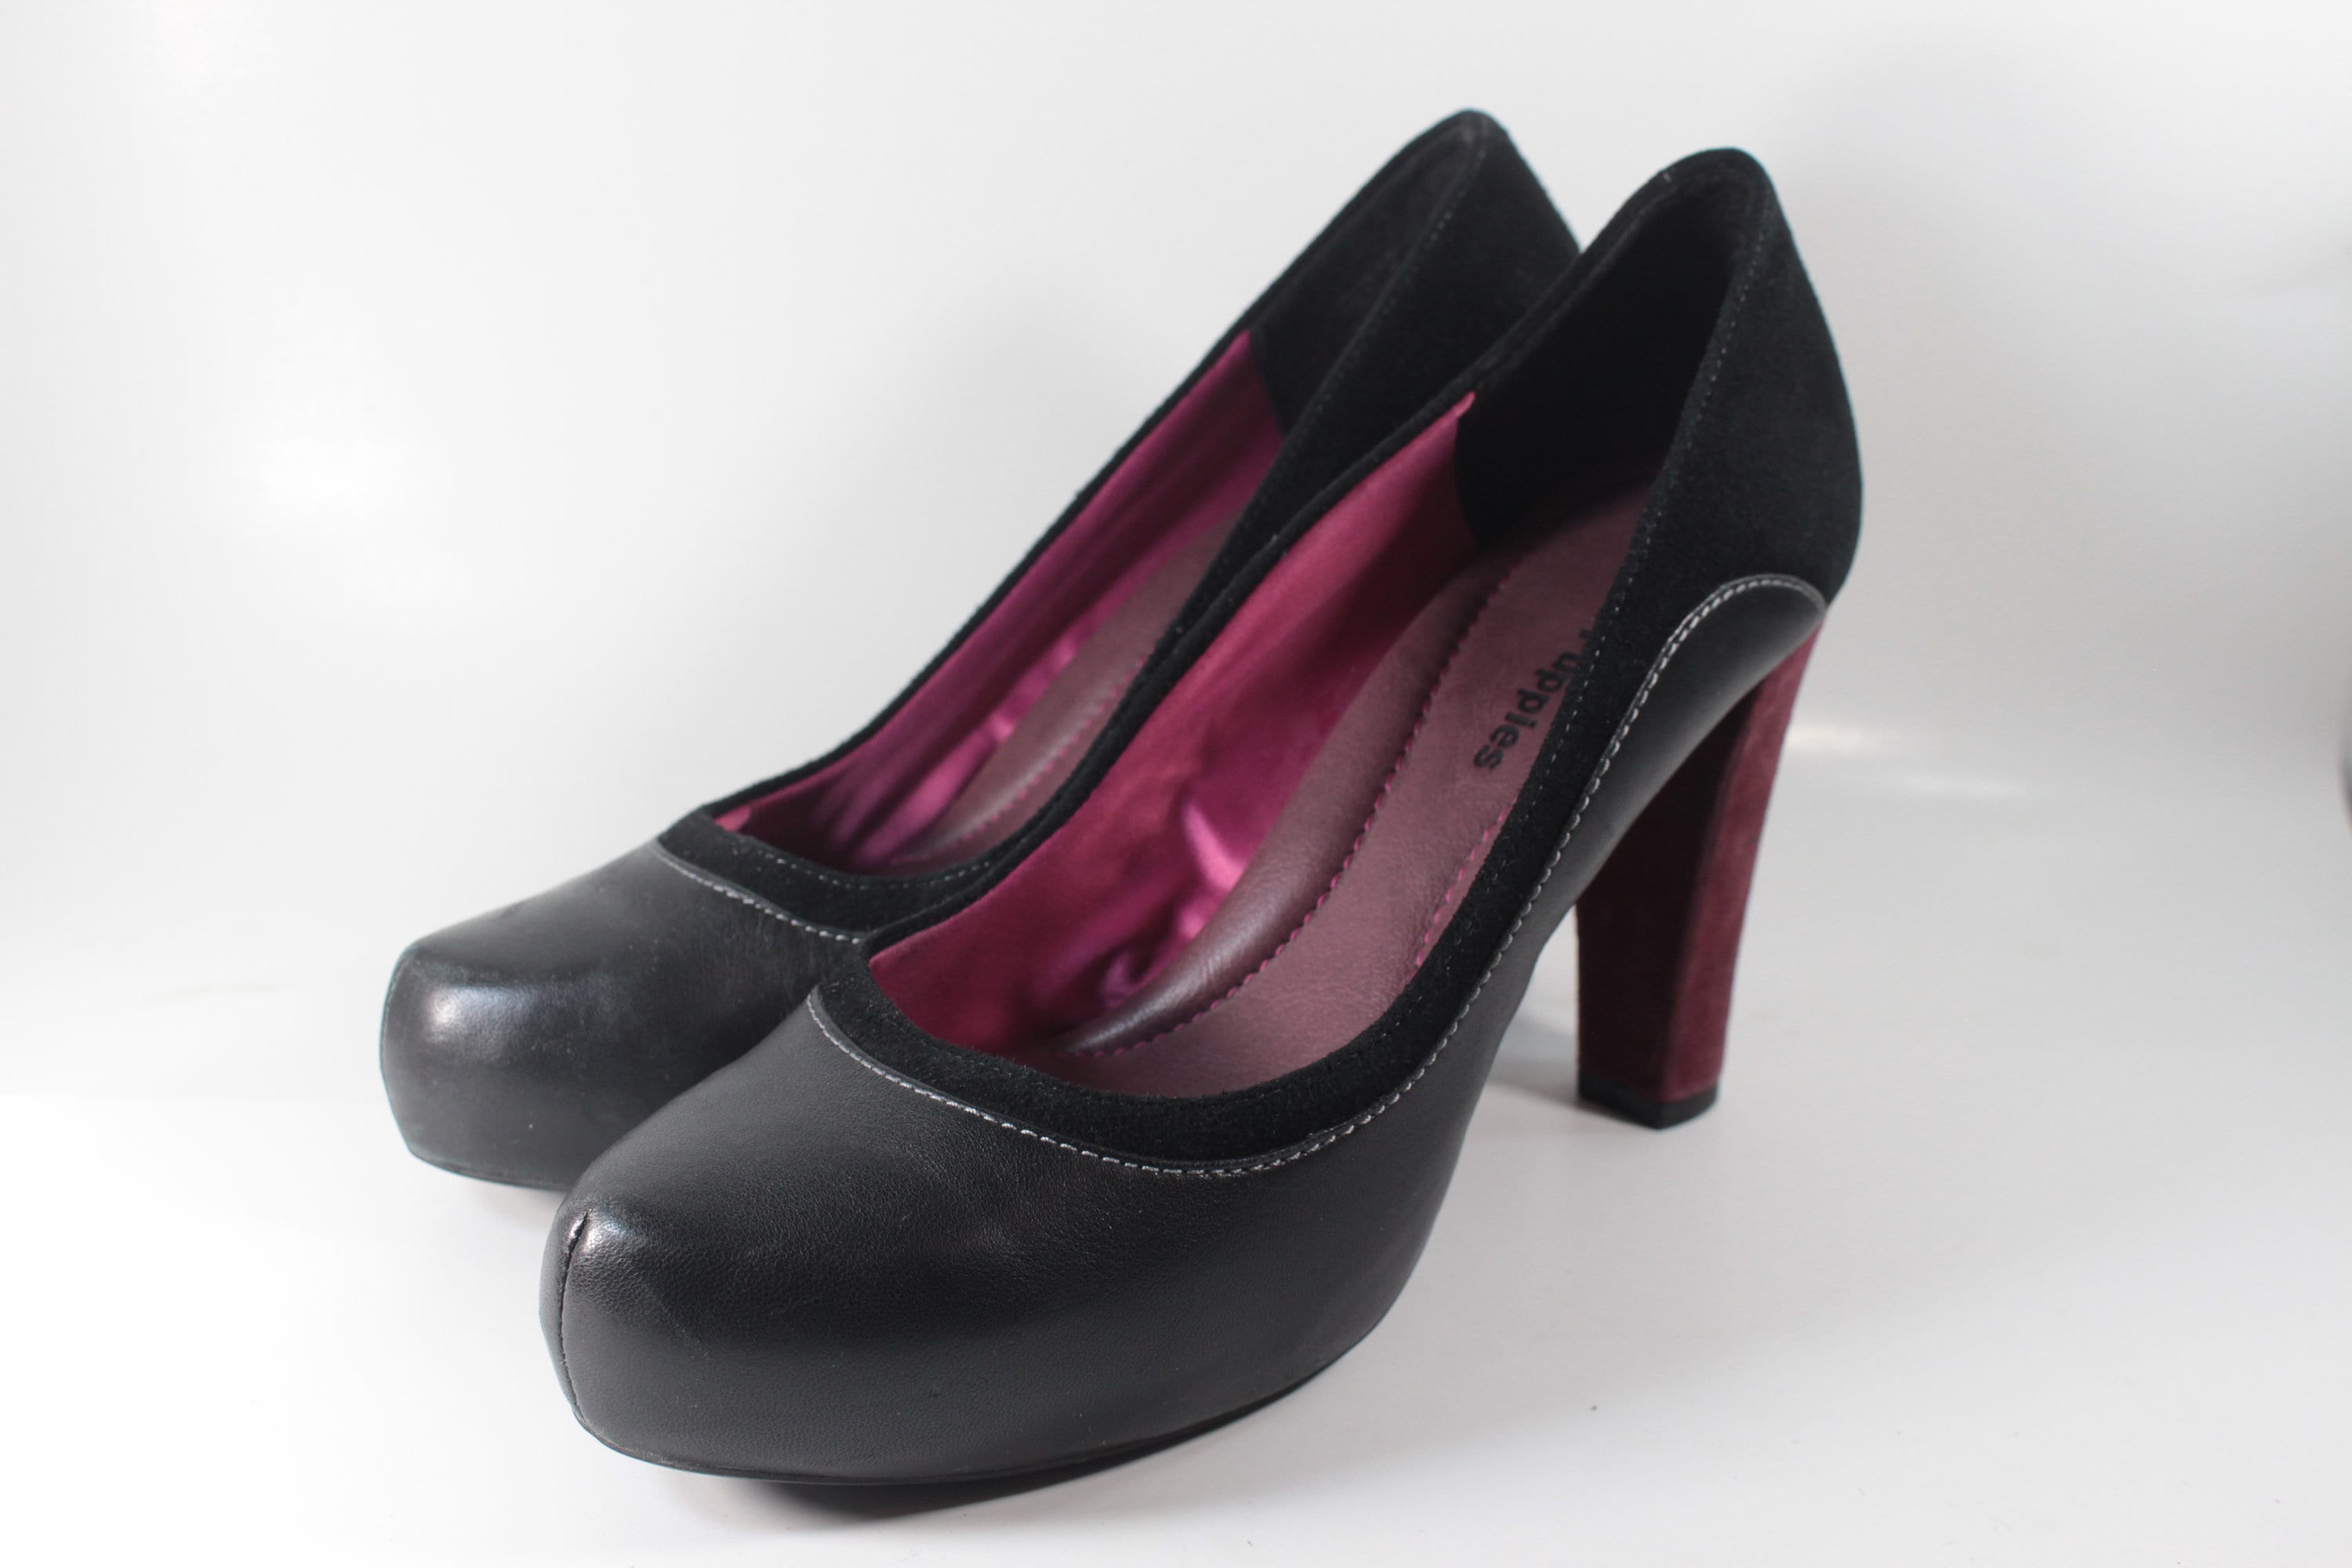 Pleaser High Heels till salu i: Pasig | Facebook Marketplace | Facebook